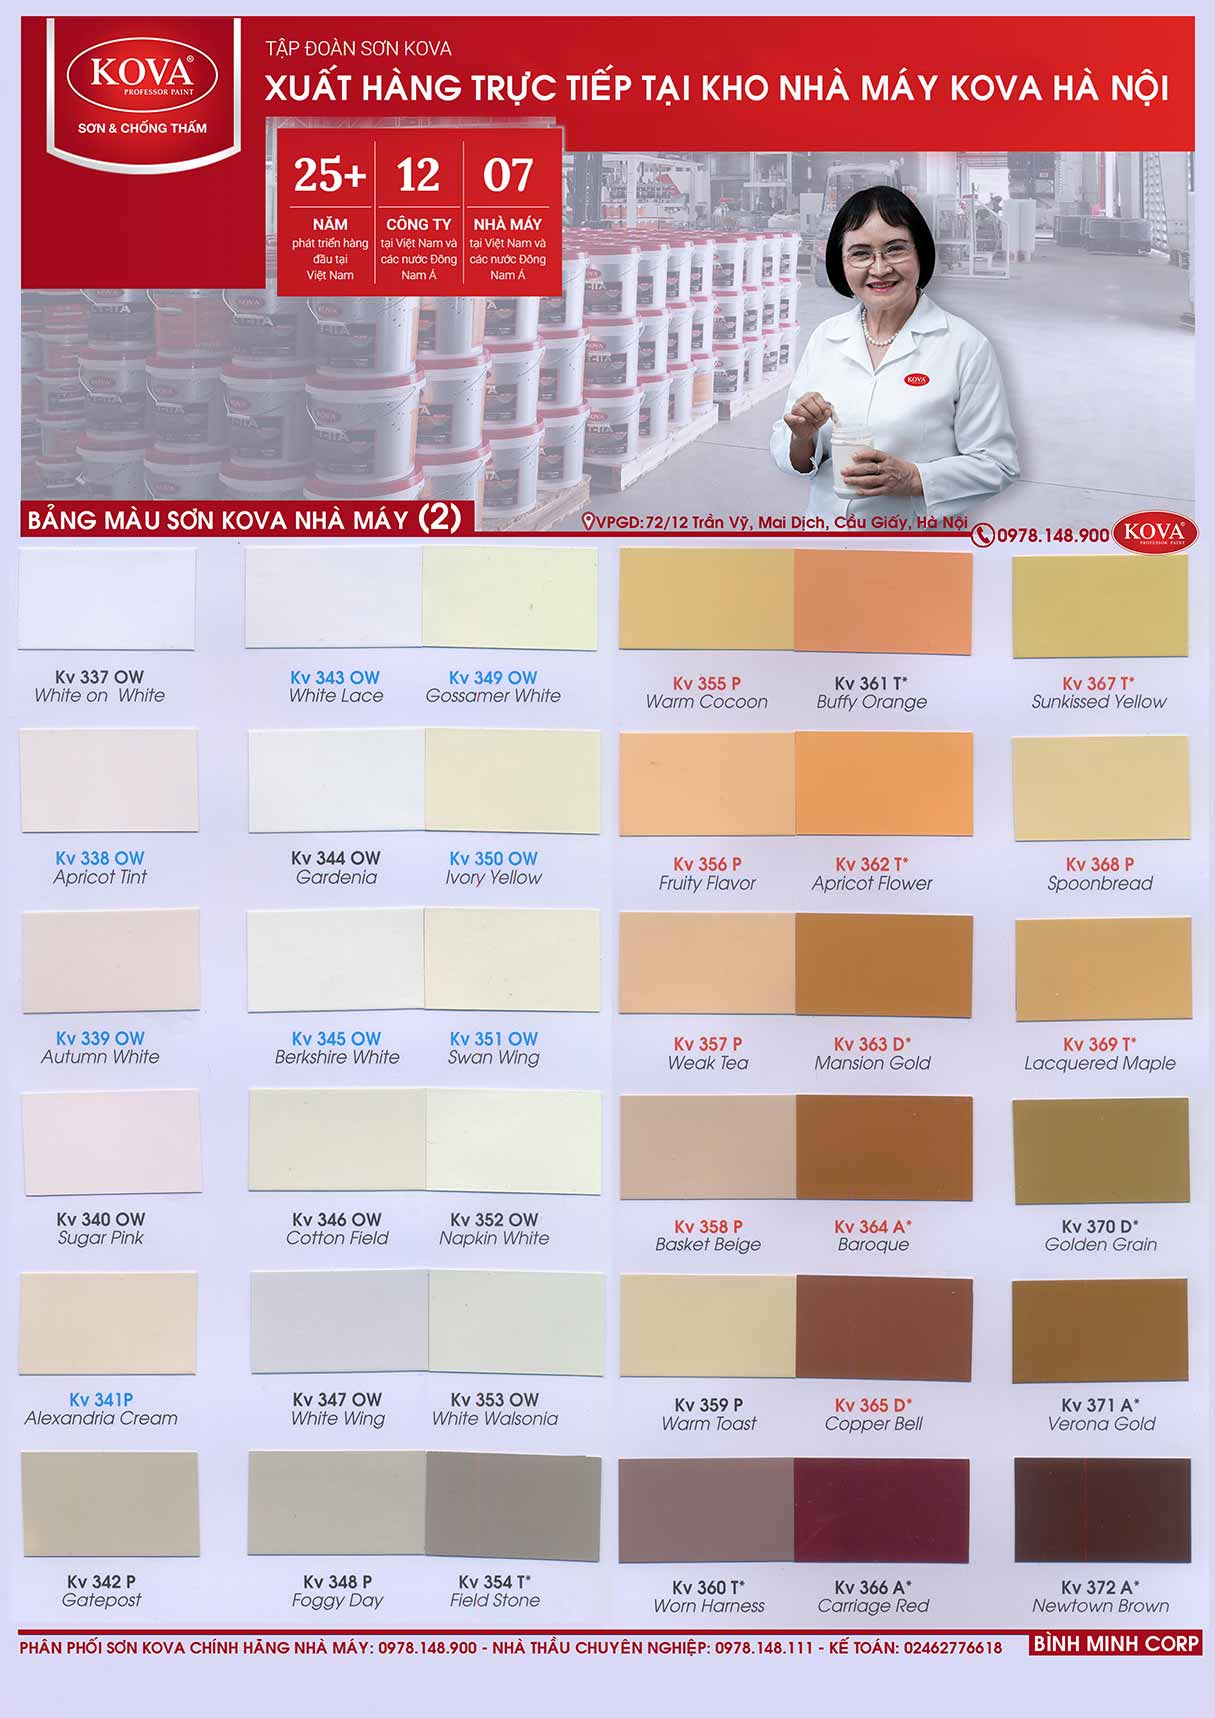 Với bảng màu sơn epoxy Kova đa dạng và chất lượng tuyệt vời, bạn sẽ có sự lựa chọn tối ưu cho các sản phẩm sơn của mình. Hãy xem tấm ảnh để khám phá những màu sắc đẹp và phong phú nhất!